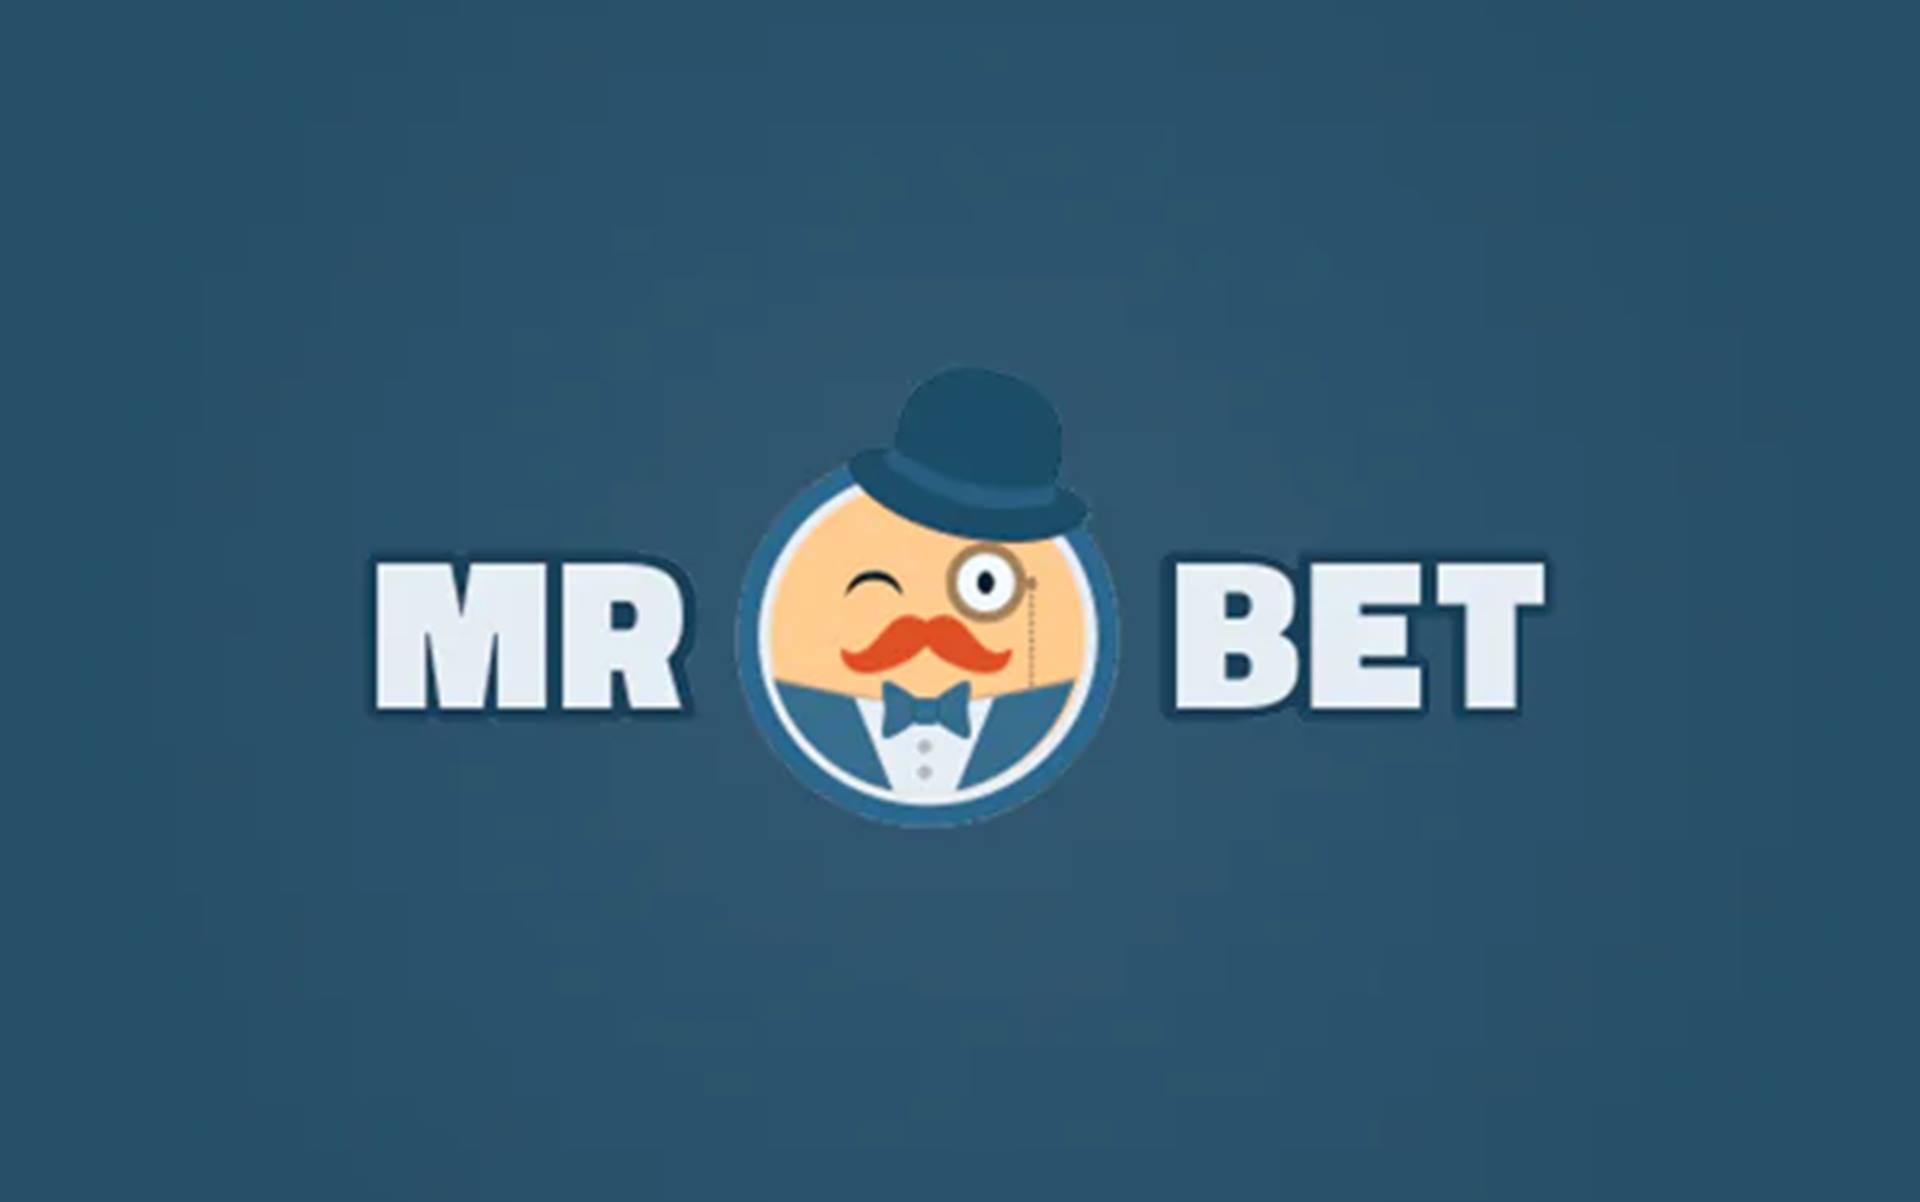 Como funciona o Mr Bet? Veja como se registrar e participar do game mais divertido